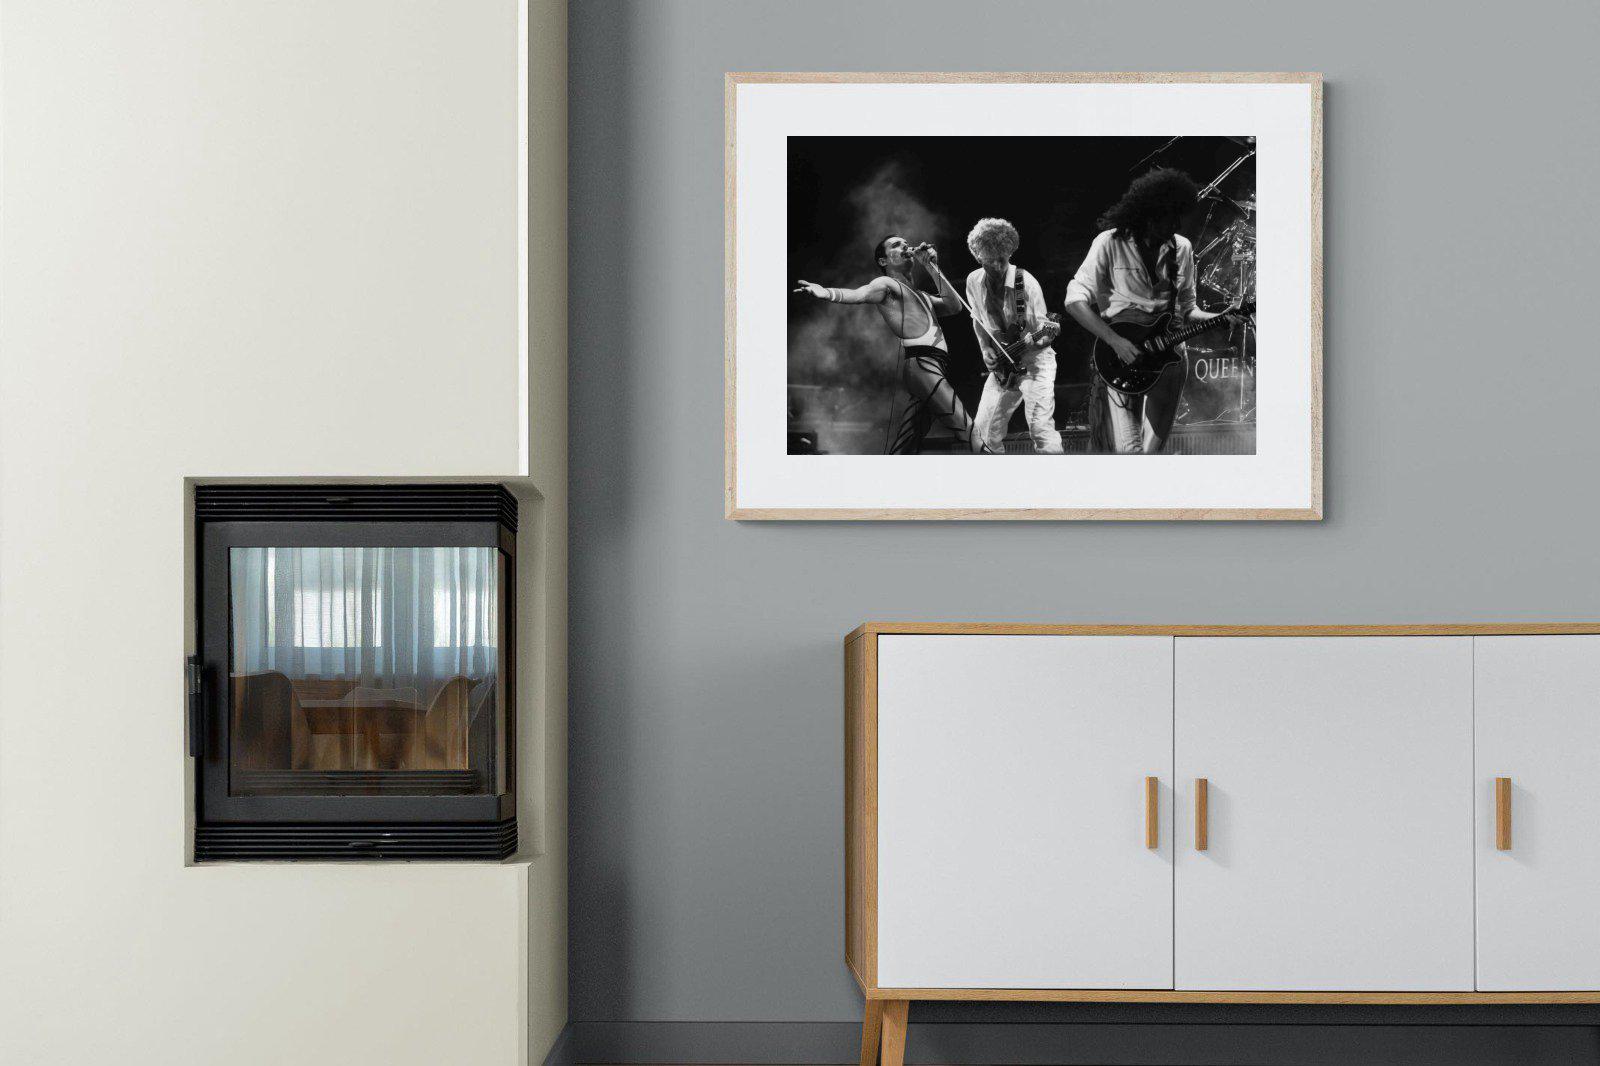 Queen-Wall_Art-100 x 75cm-Framed Print-Wood-Pixalot